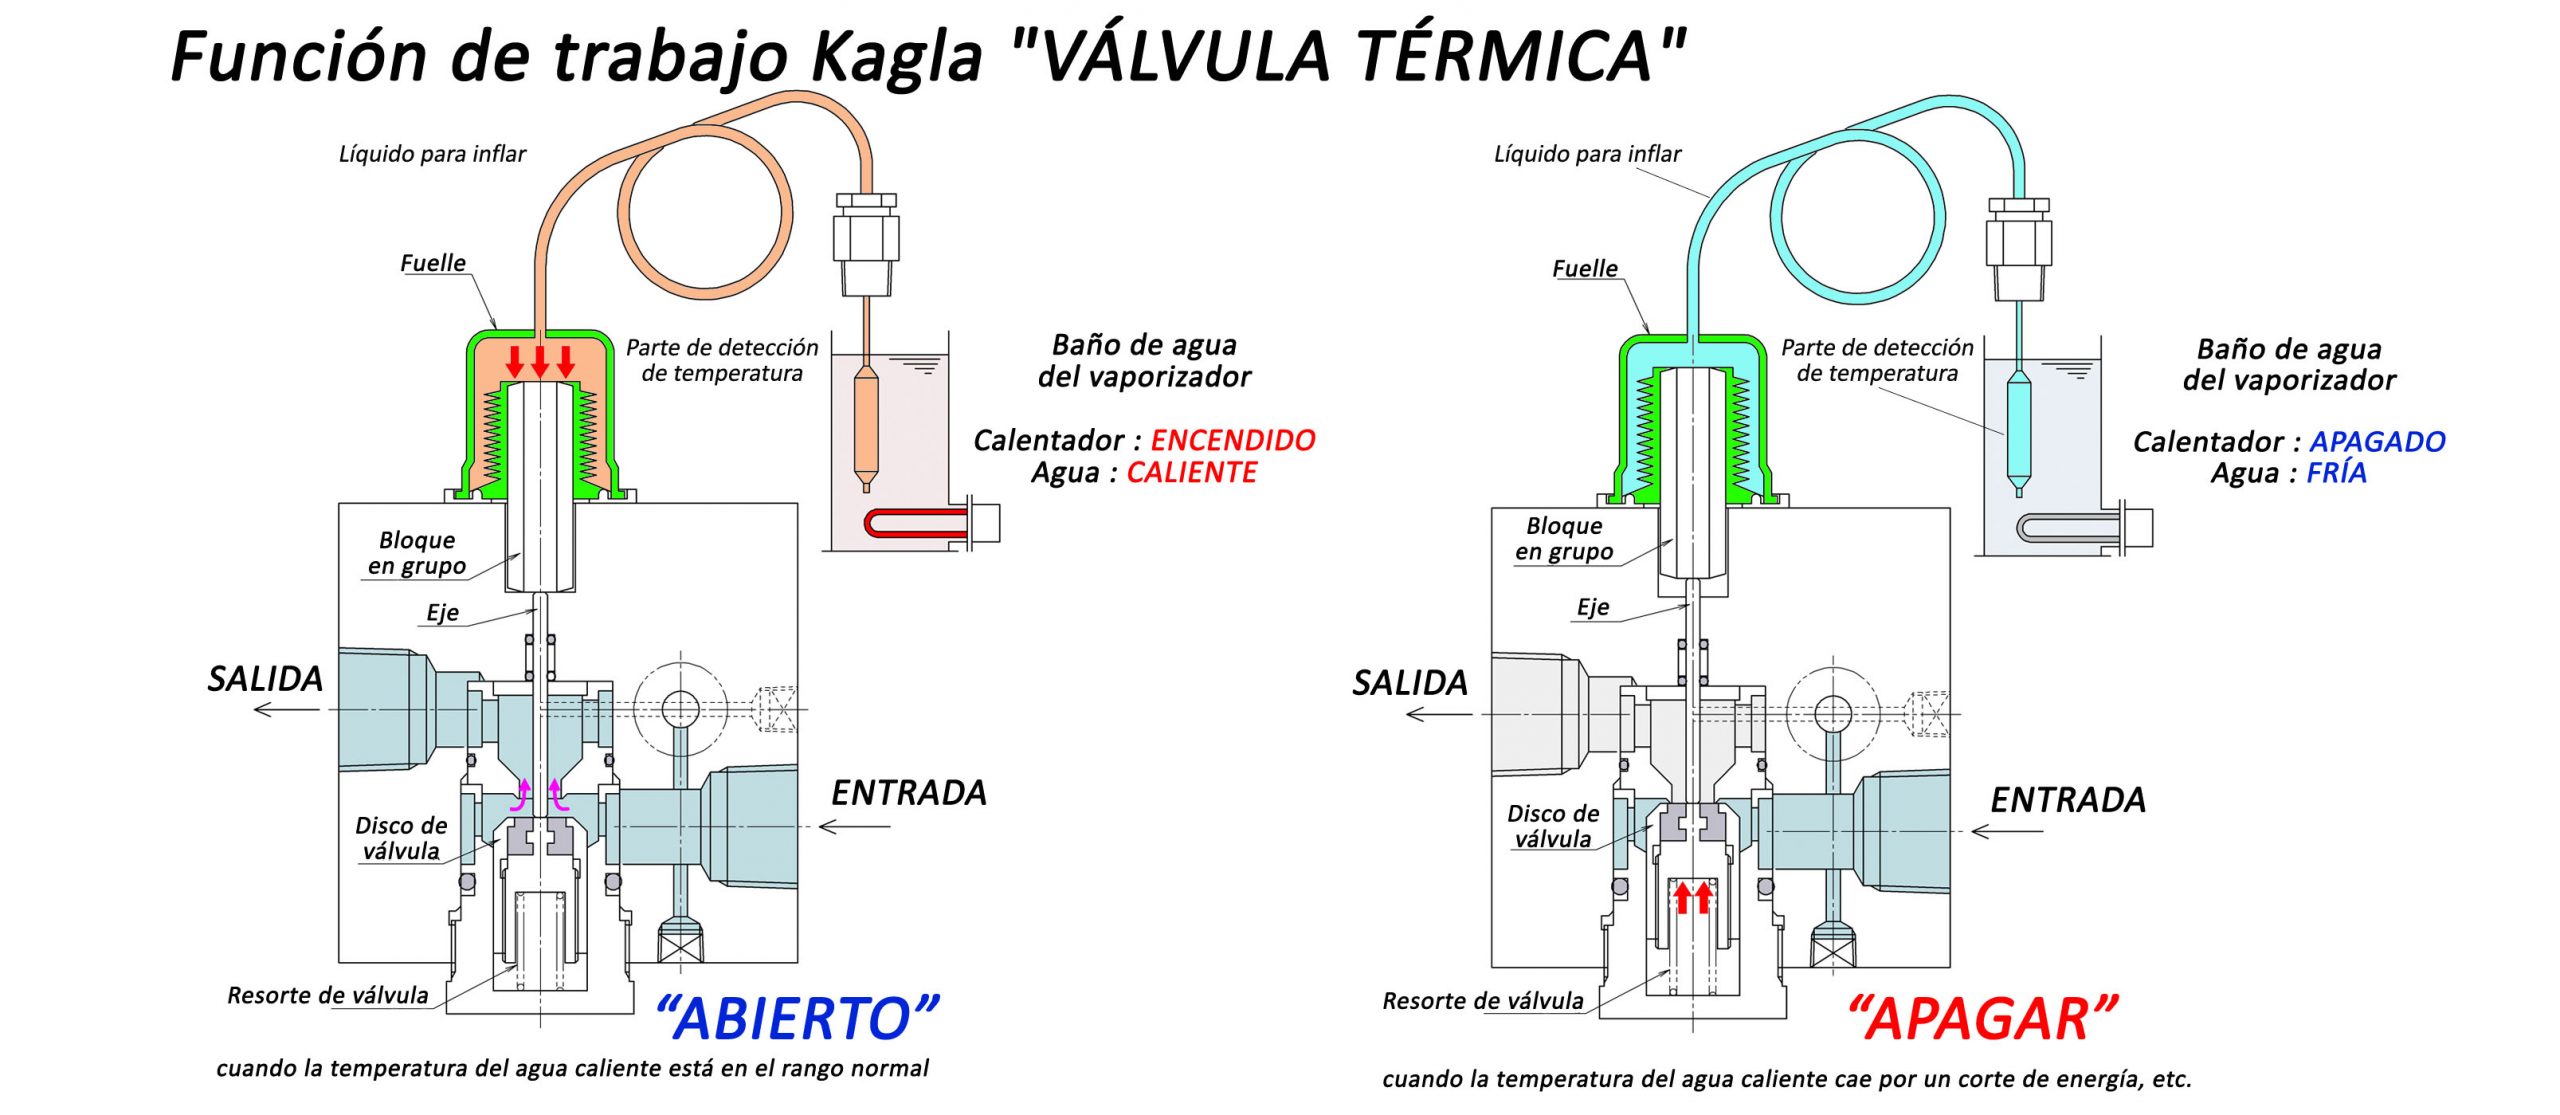 Imagen visual de cómo funciona el sistema de seguridad Kagla Válvula Térmica para evitar el arrastre de líquido